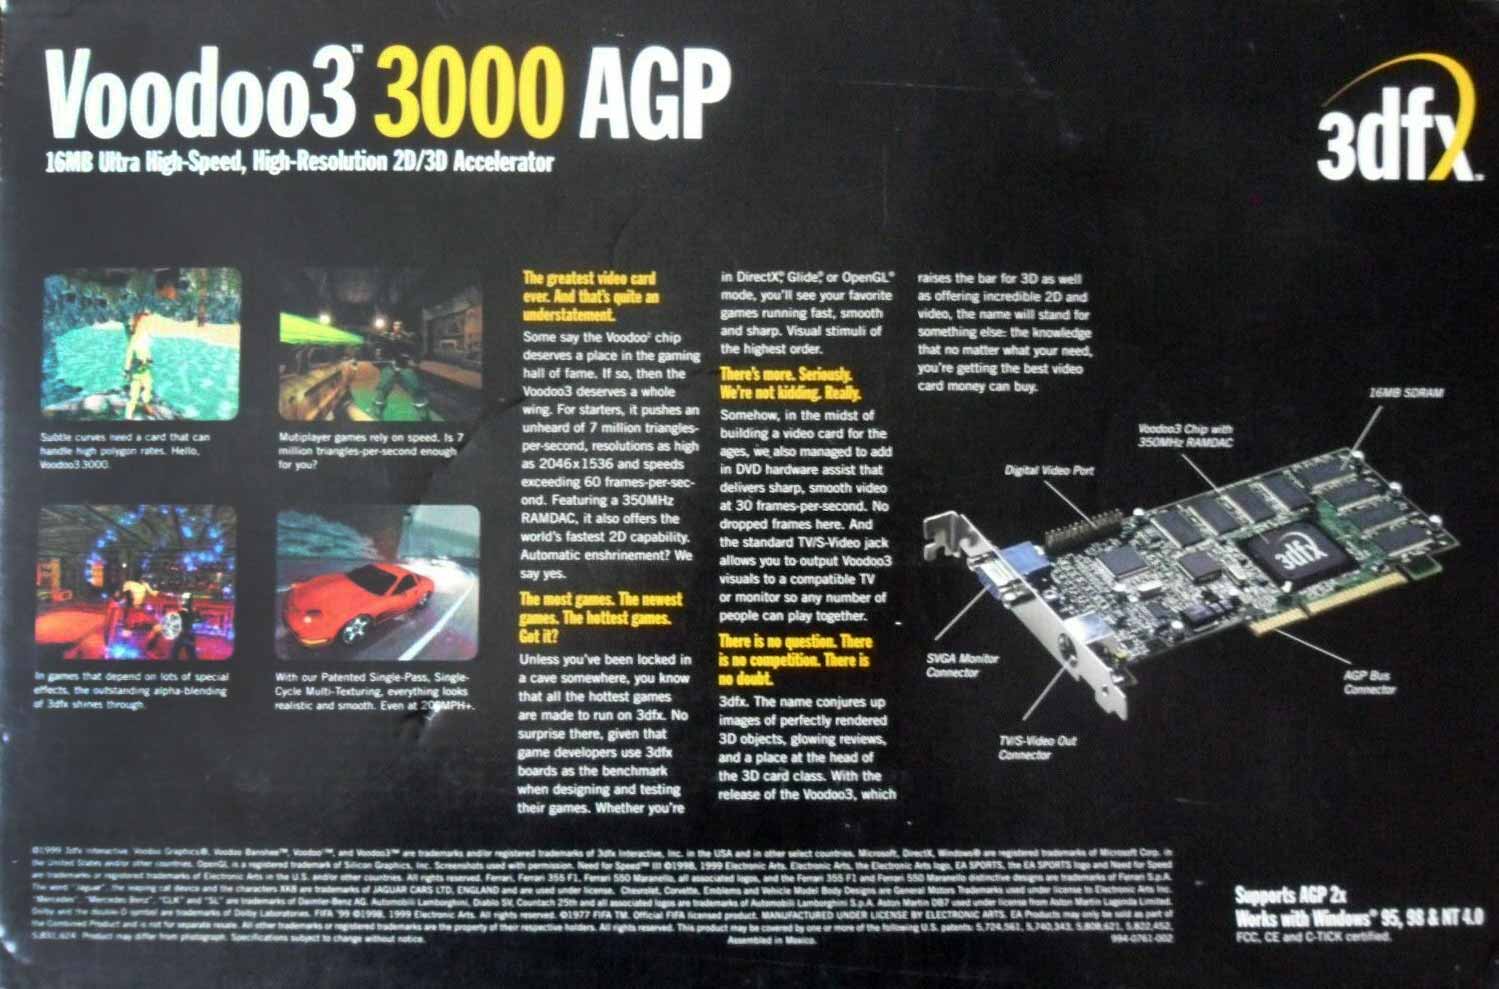 3Dfx Voodoo 3 3000 AGP 1999 год, отличная видеокарта своего времени